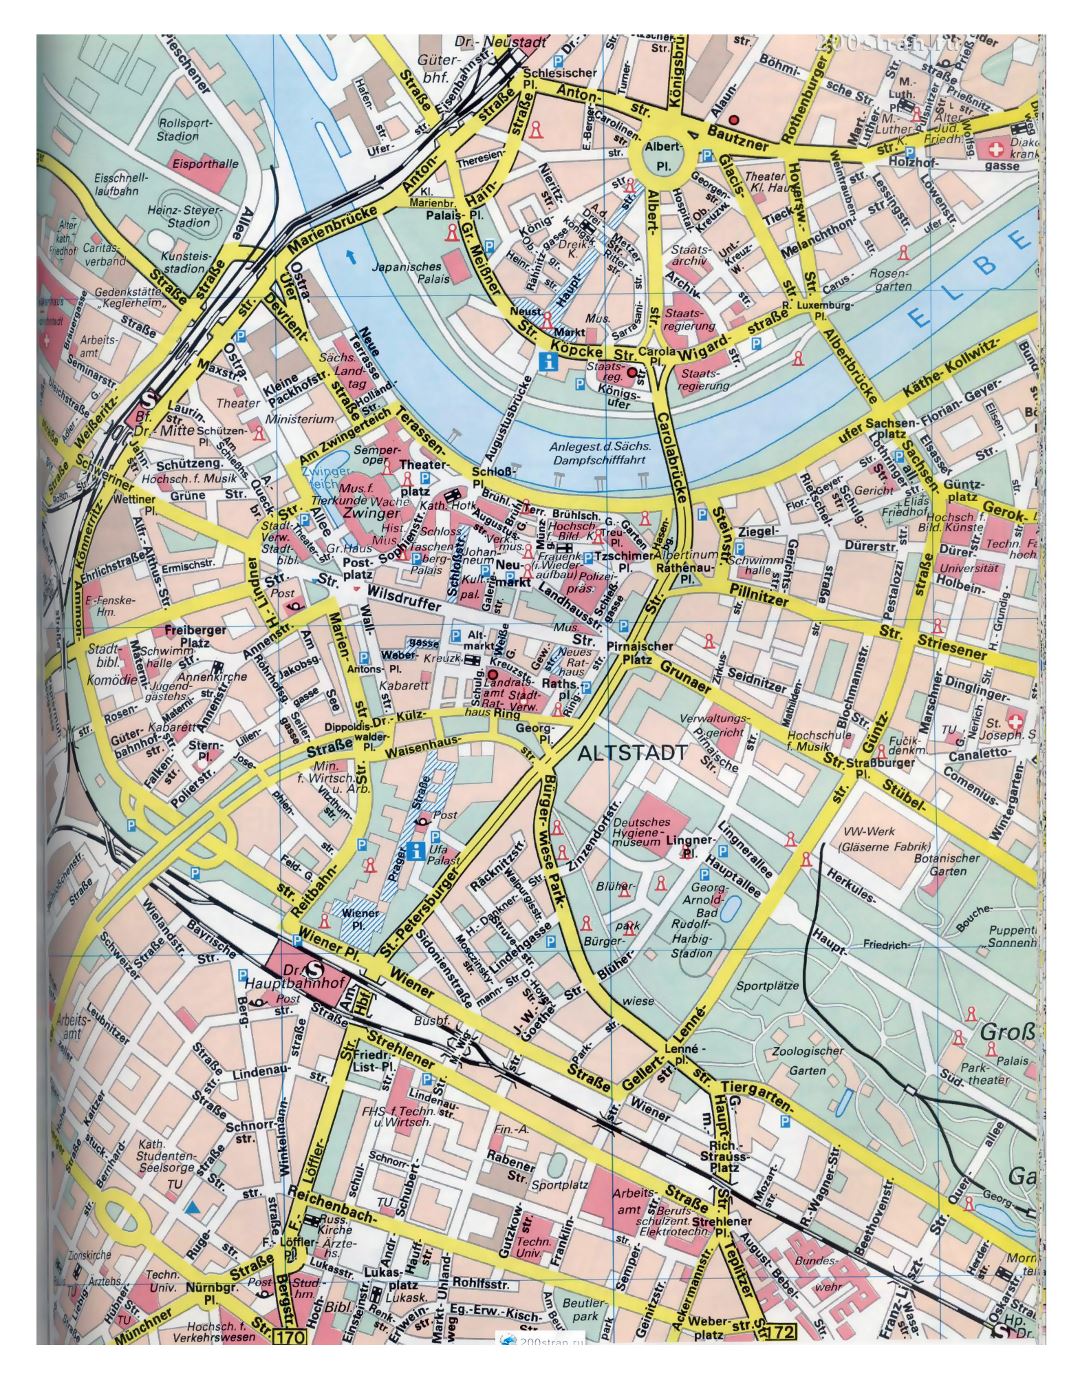 Ampliación de calles detalladas mapa de la parte central de la ciudad de Dresde